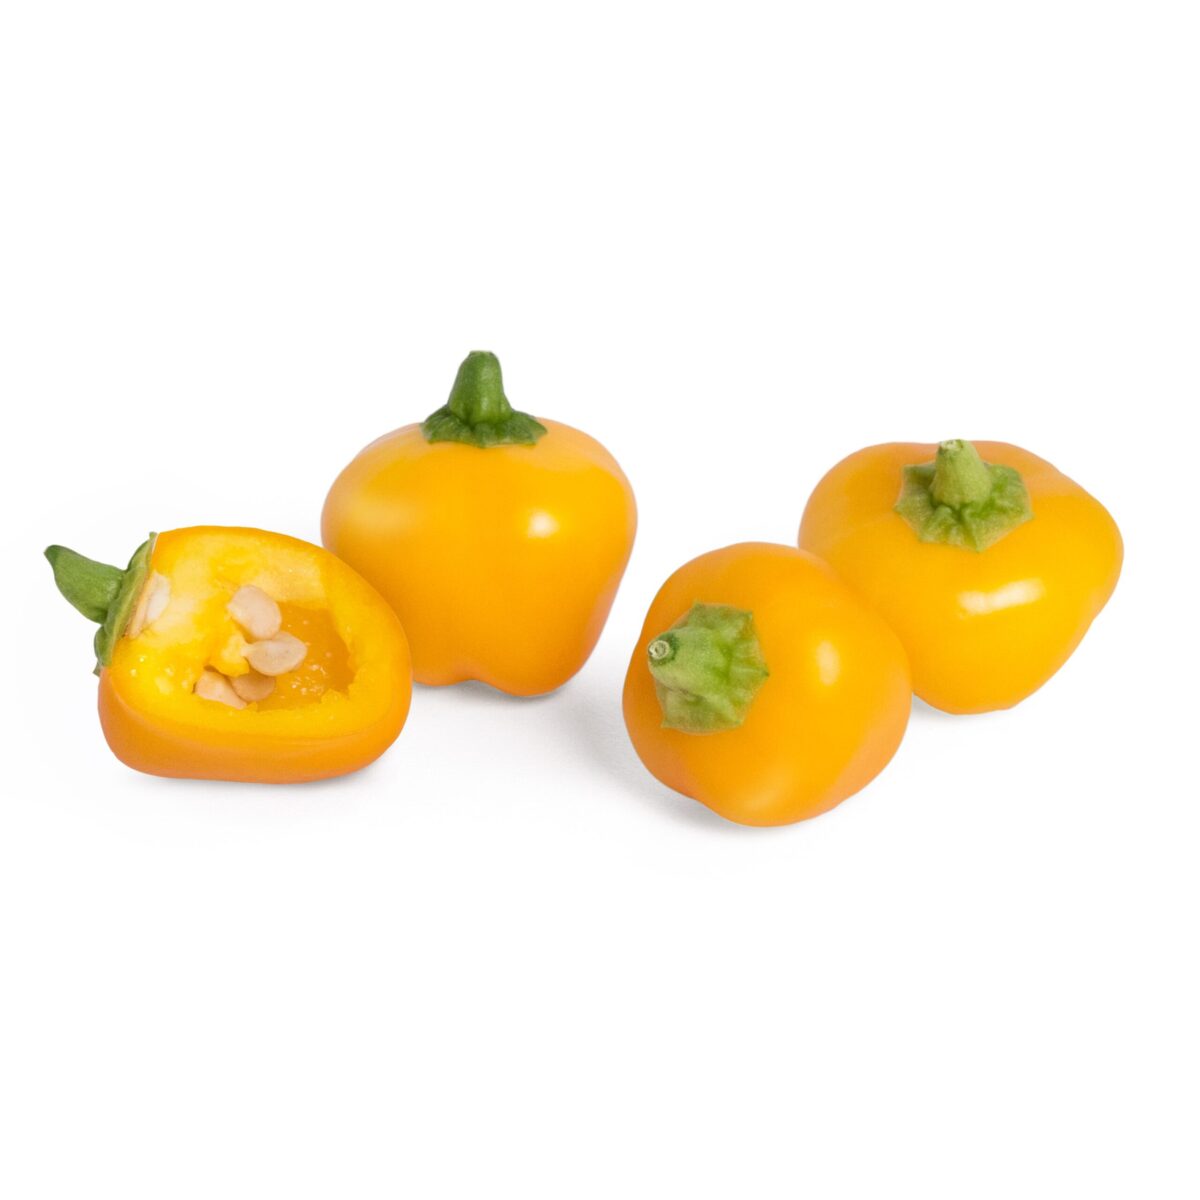 VERITABLE Lingot® Yellow mini bell pepper Organic - Жълти Мини Камби